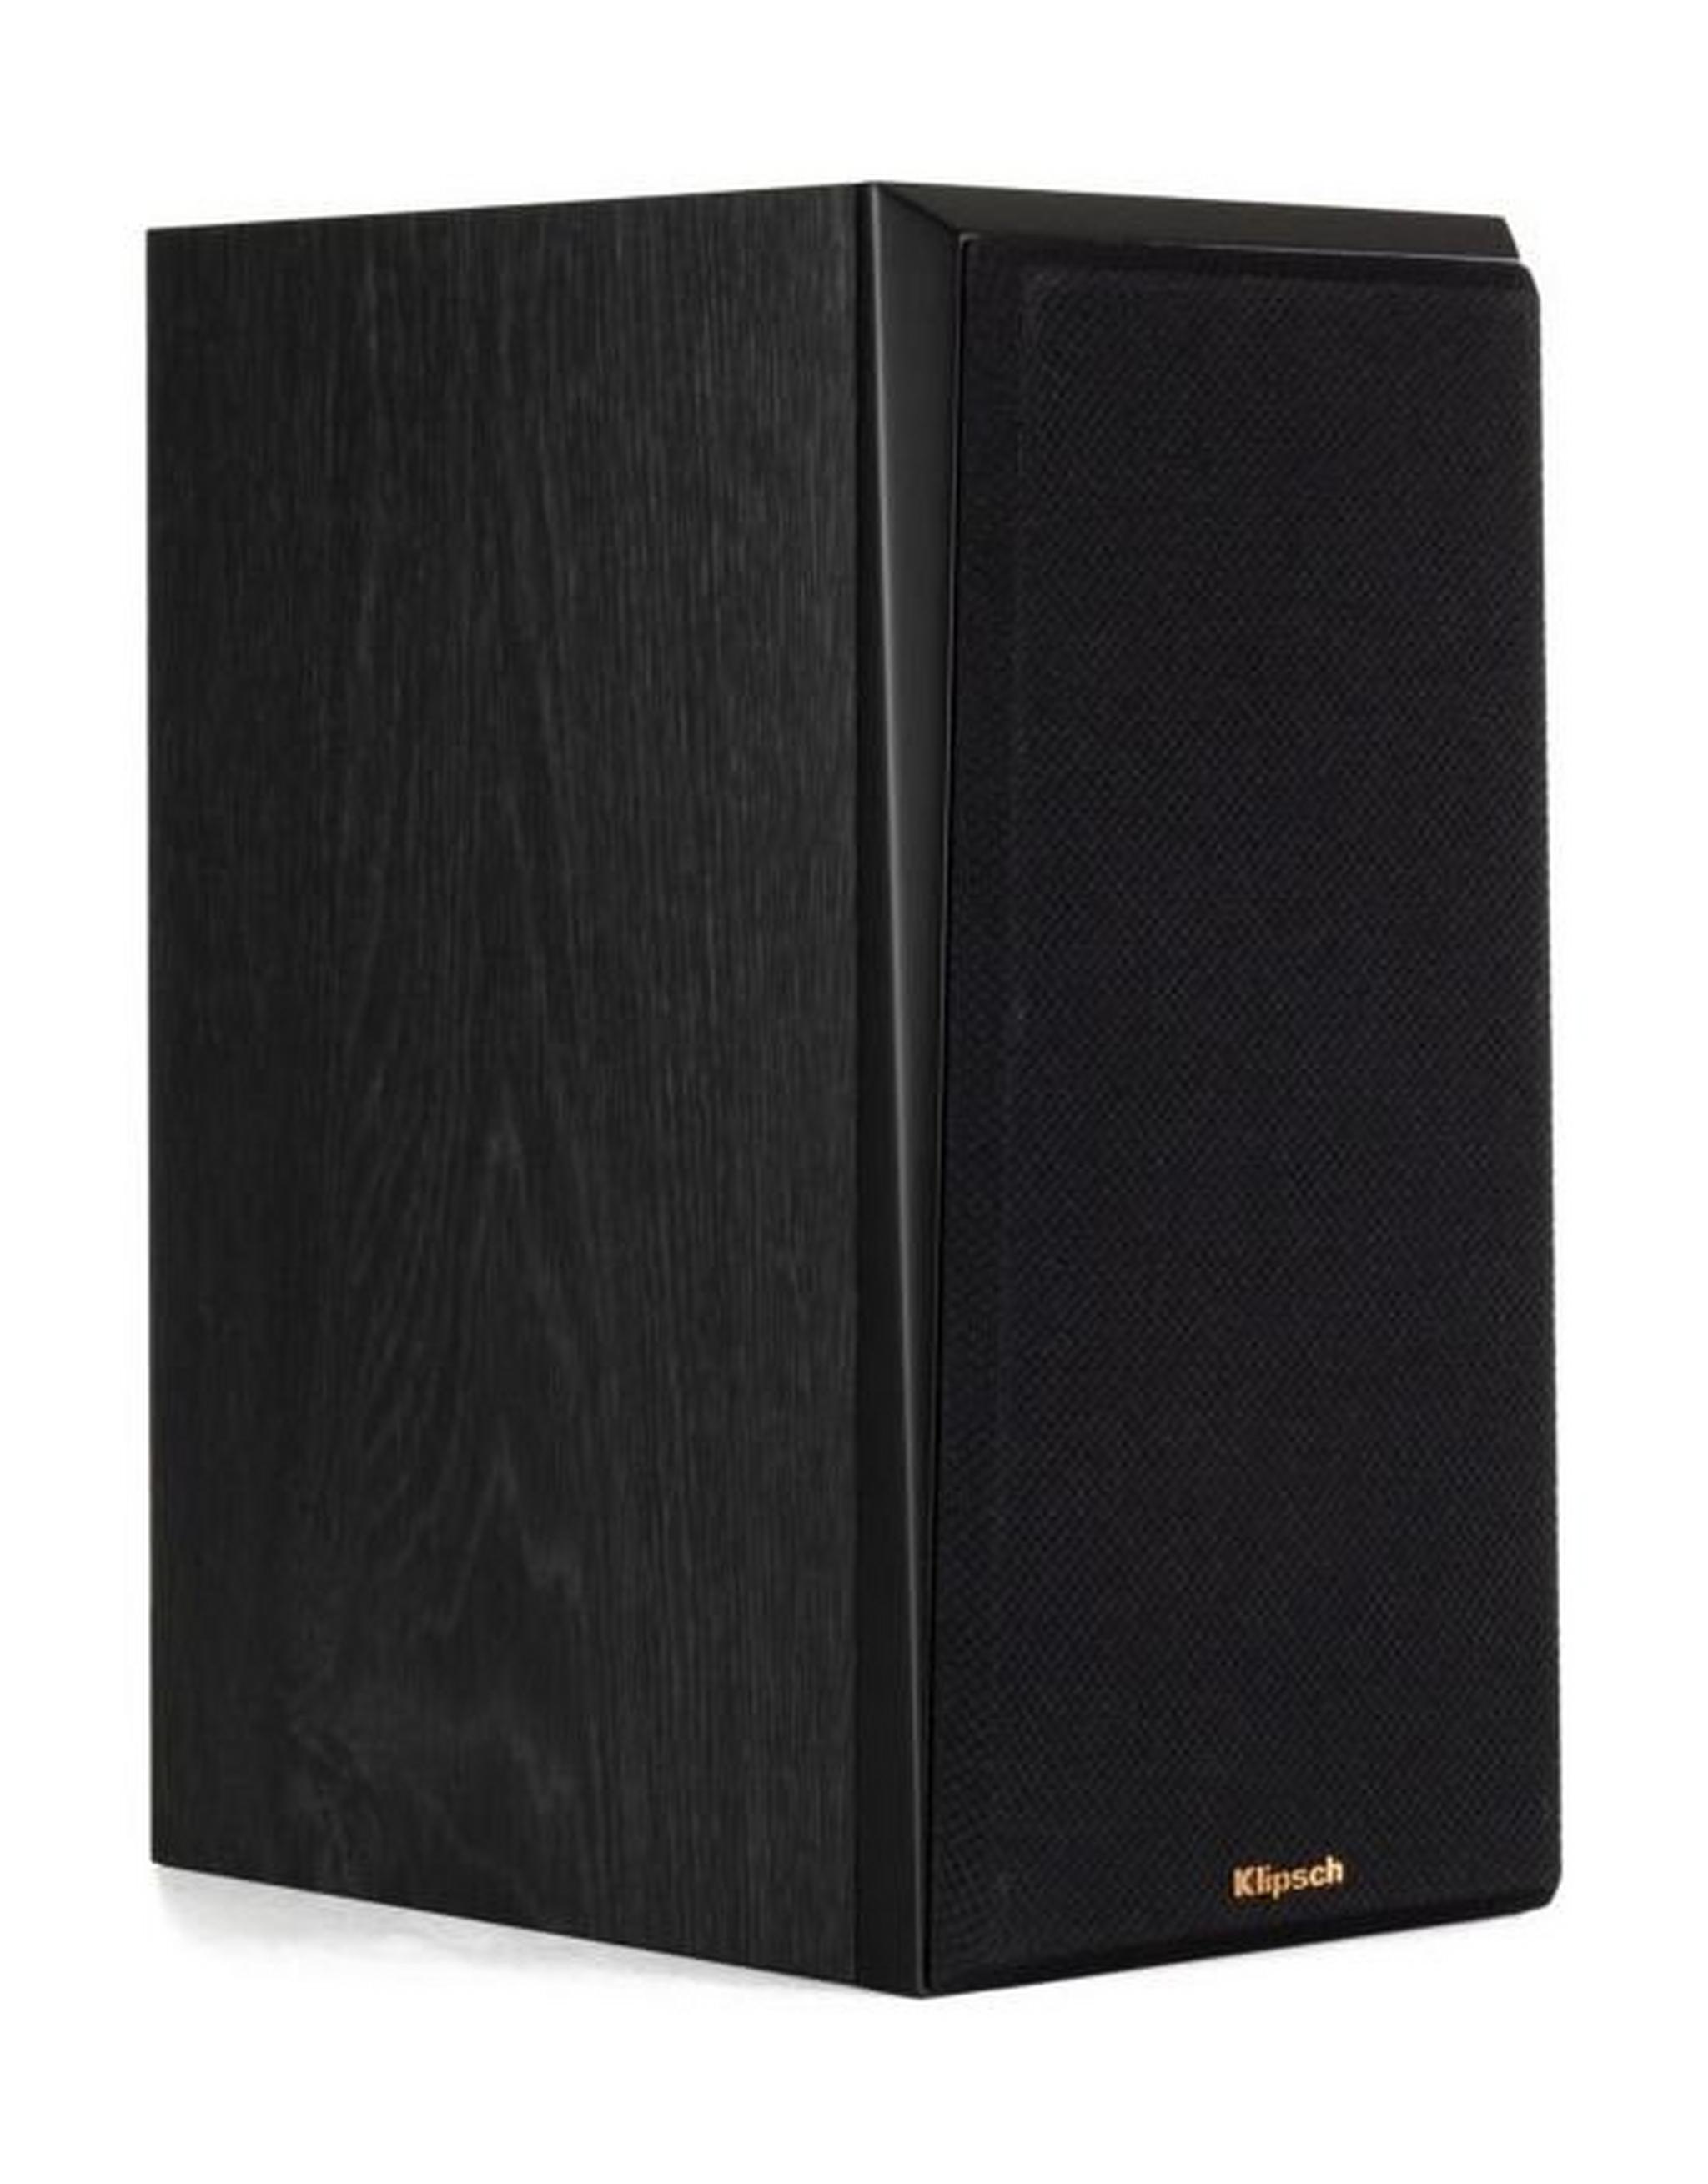 Klipsch RP-500M Bookshelf Speaker - Black